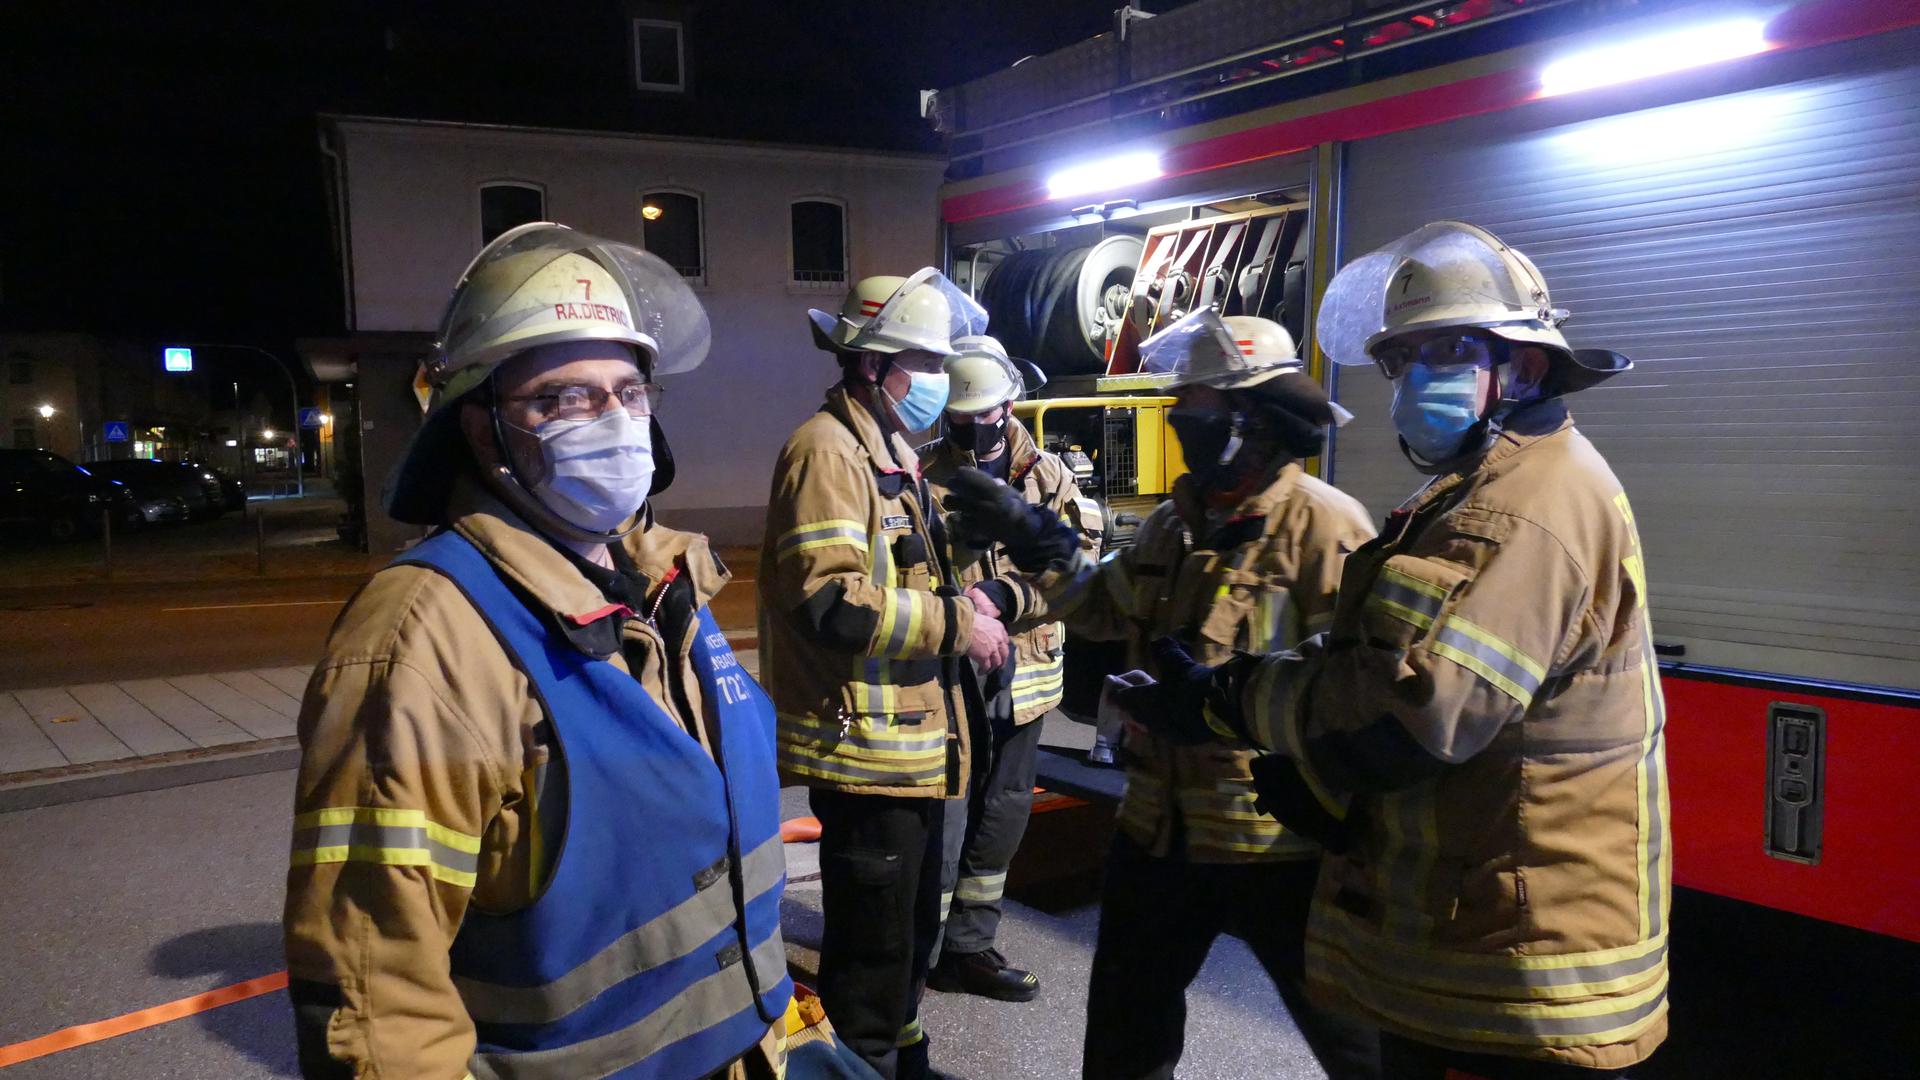 Nach Vorschrift: Auch die Männer bei der Feuerwehr müssen sich trotz anstrengendem Einsatz an die Maskenpflicht halten.  Rainer Bleich (links) nach seiner letzten Übung mit der Einsatzabteilung.  